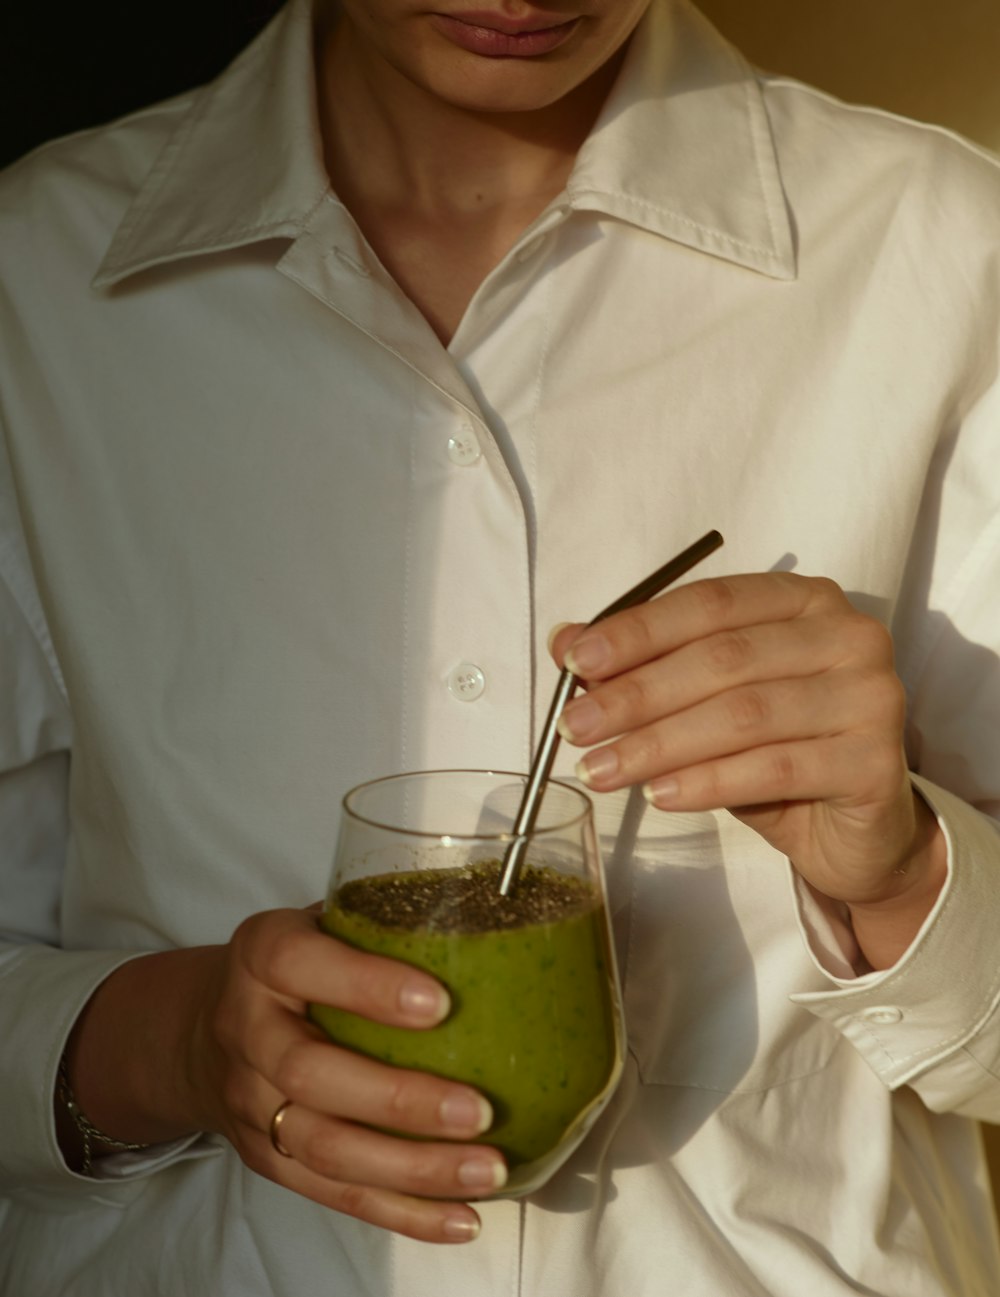 personne en chemise blanche boutonnée tenant un verre à boire transparent avec un liquide vert